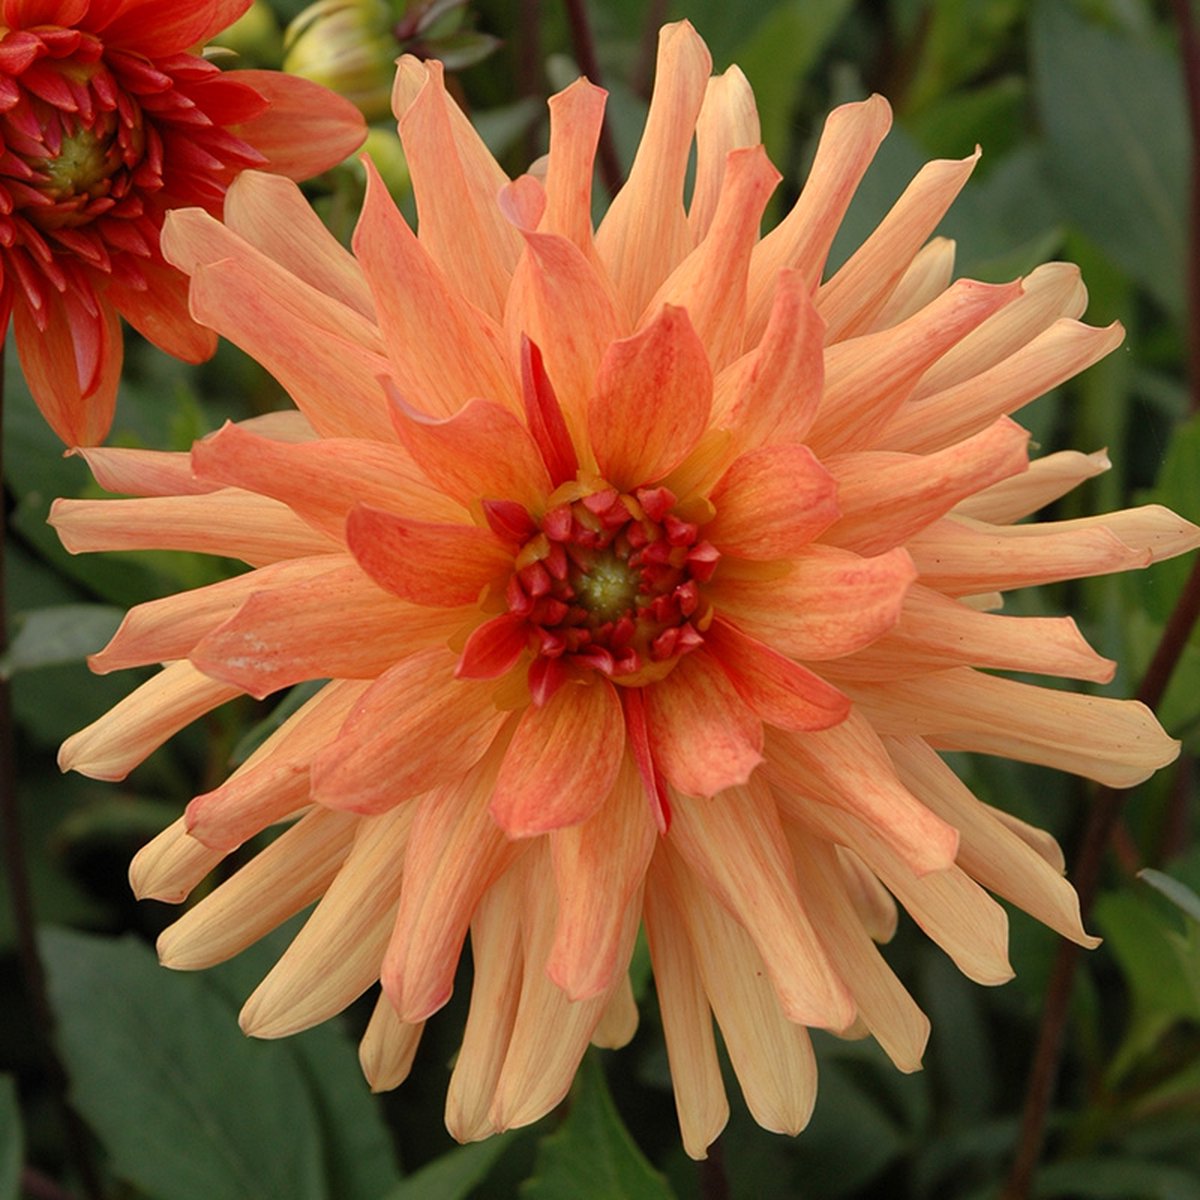 Dahlia Orange Pygmy | 3 stuks | Cactus Dahlia | Knol | Geschikt voor in Pot | Oranje | Dahlia Knollen van Top Kwaliteit | 100% Bloeigarantie | QFB Gardening